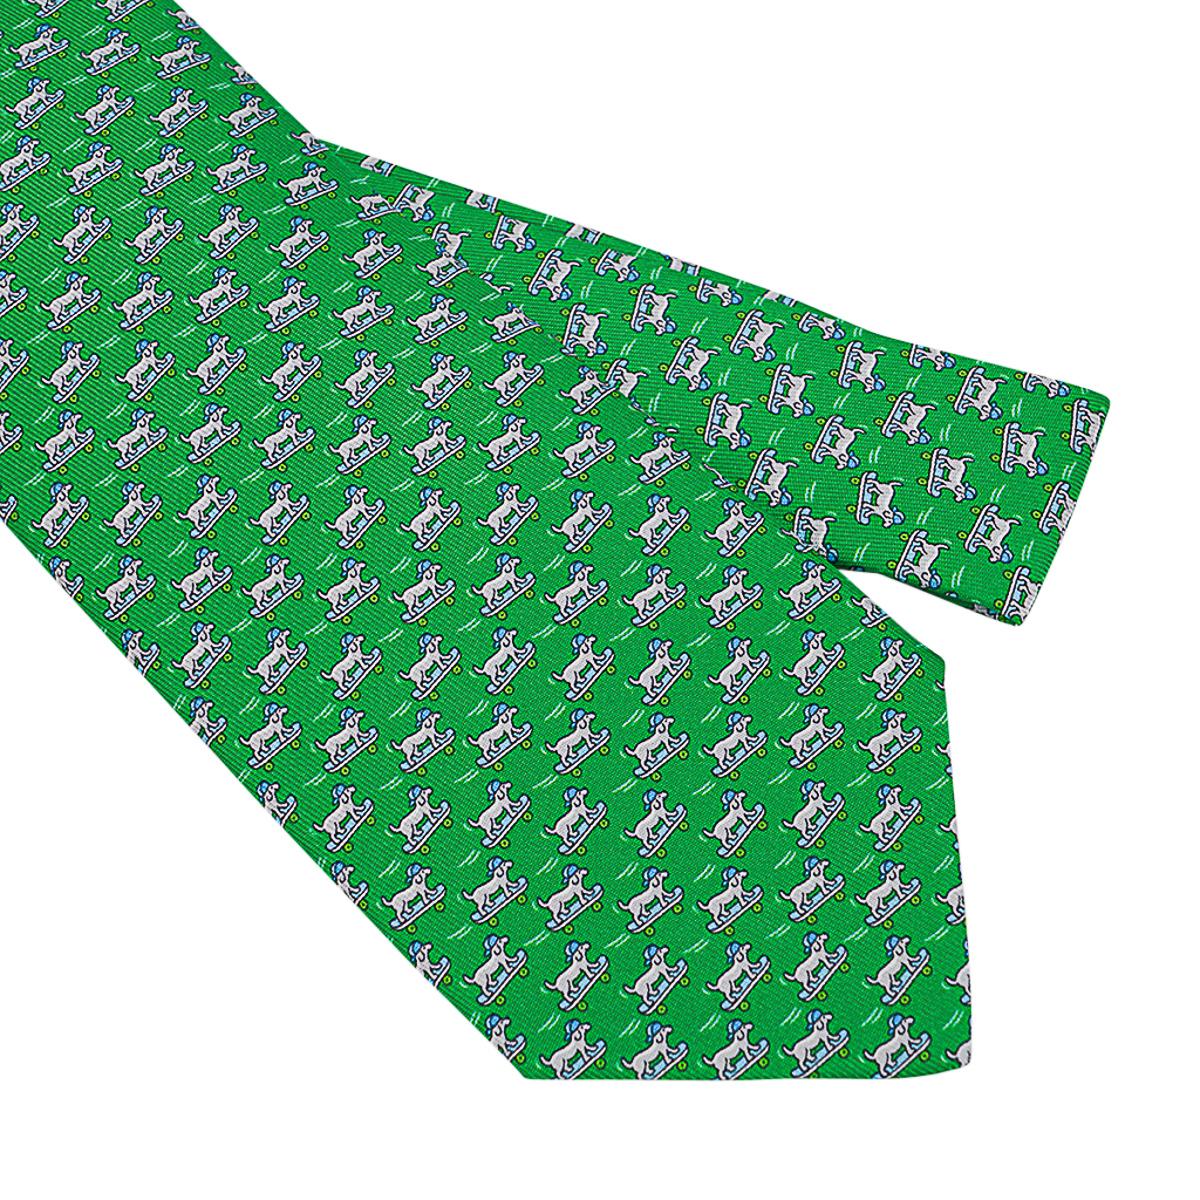 Mightychic propose une cravate en soie Hermes 7 Roller Dog Twillbi dans un coloris Vert et Gris.
Chien faisant du skateboard avec un casque à l'avant.
La queue comporte un chien assis et des planches à roulettes sur toute sa longueur.
Conçu par